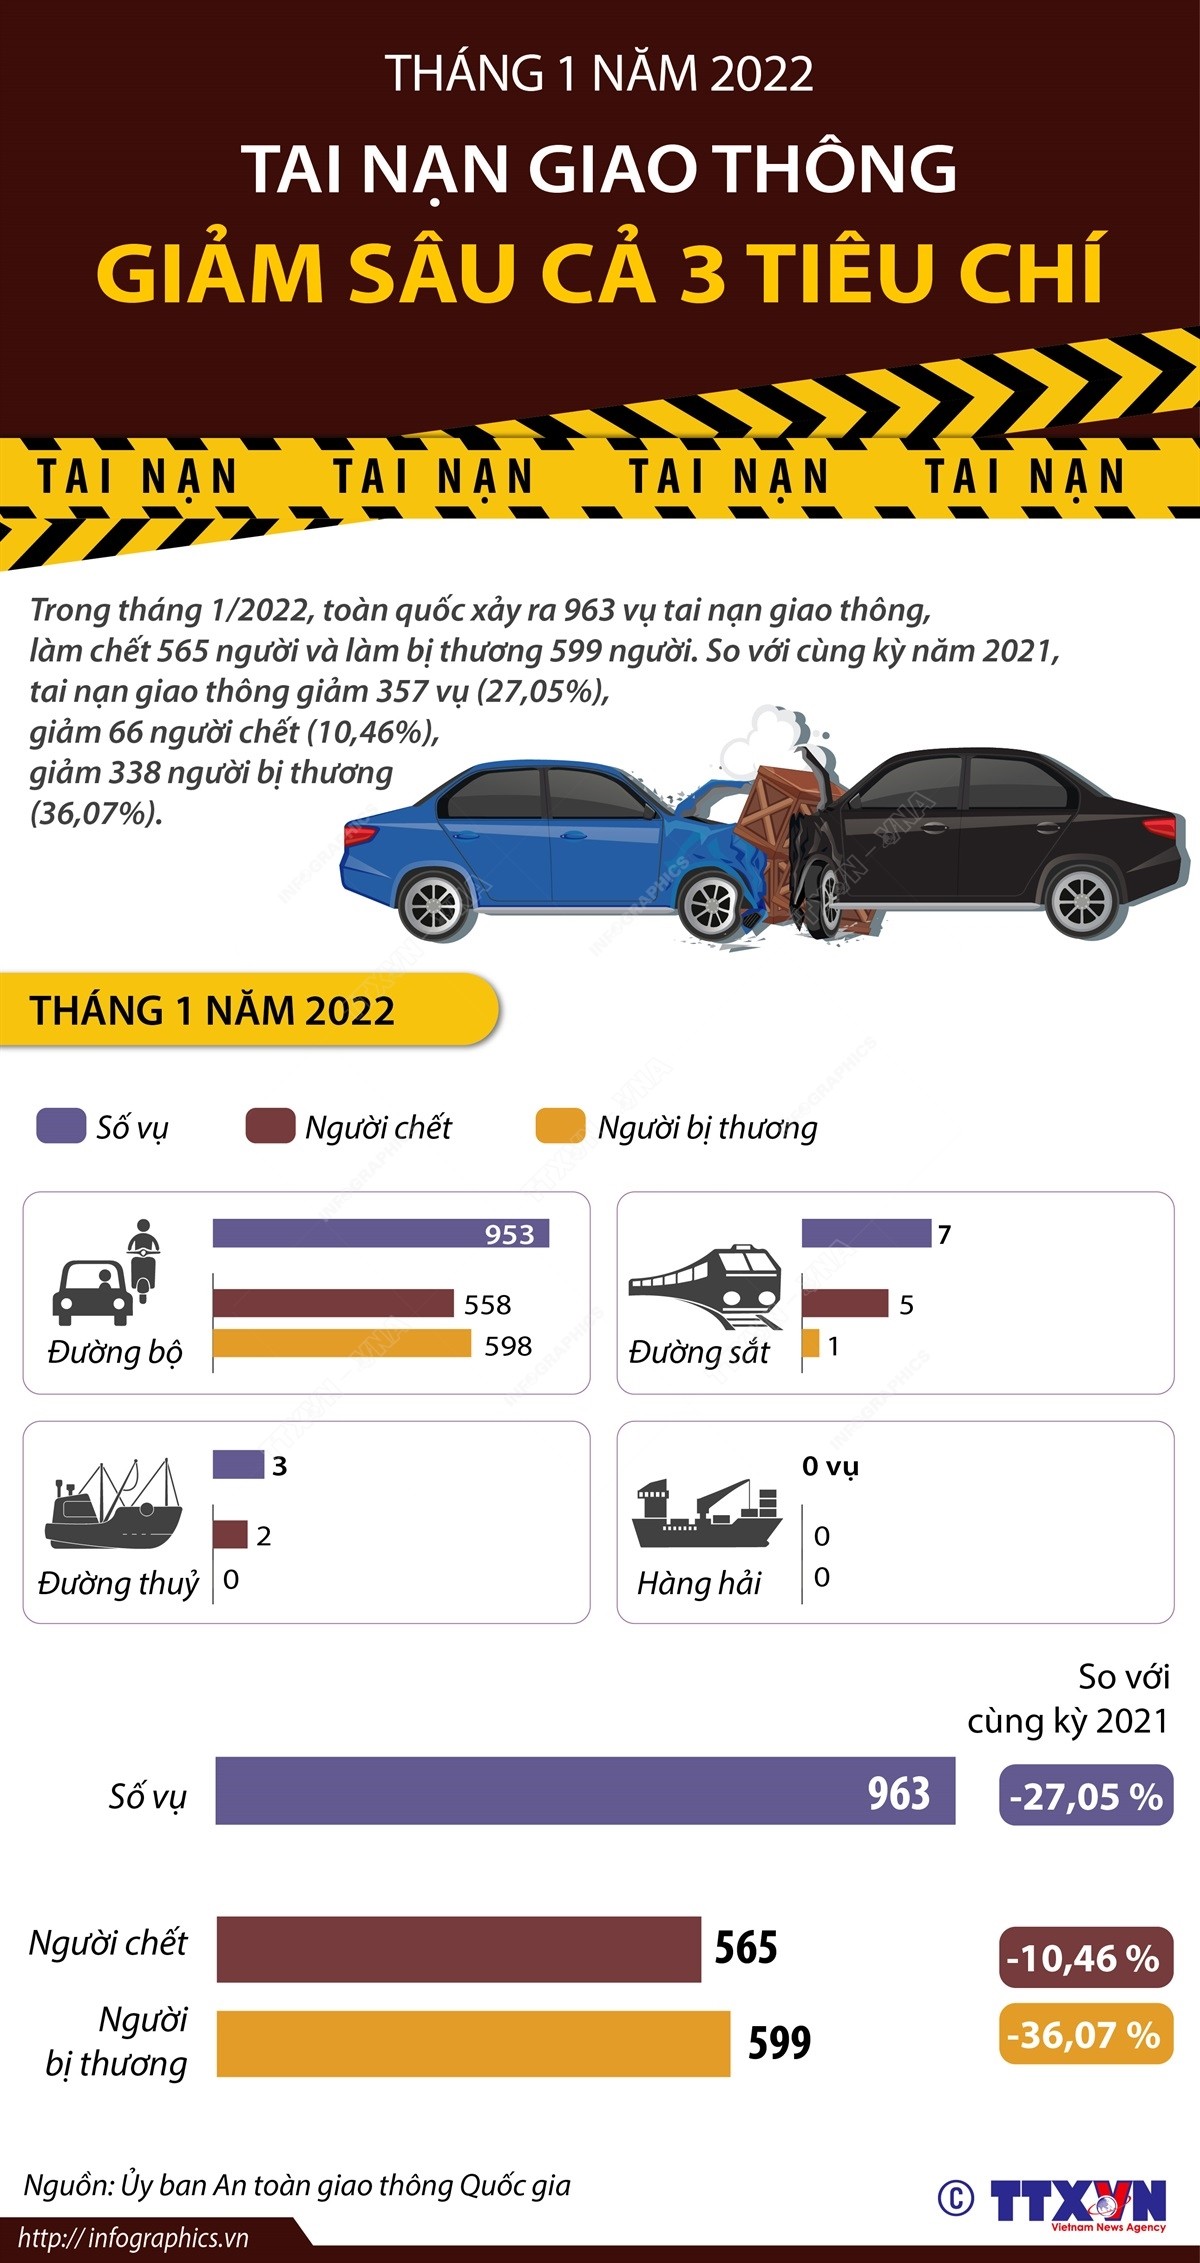 Tháng 1/2022: Tai nạn giao thông giảm sâu cả 3 tiêu chí